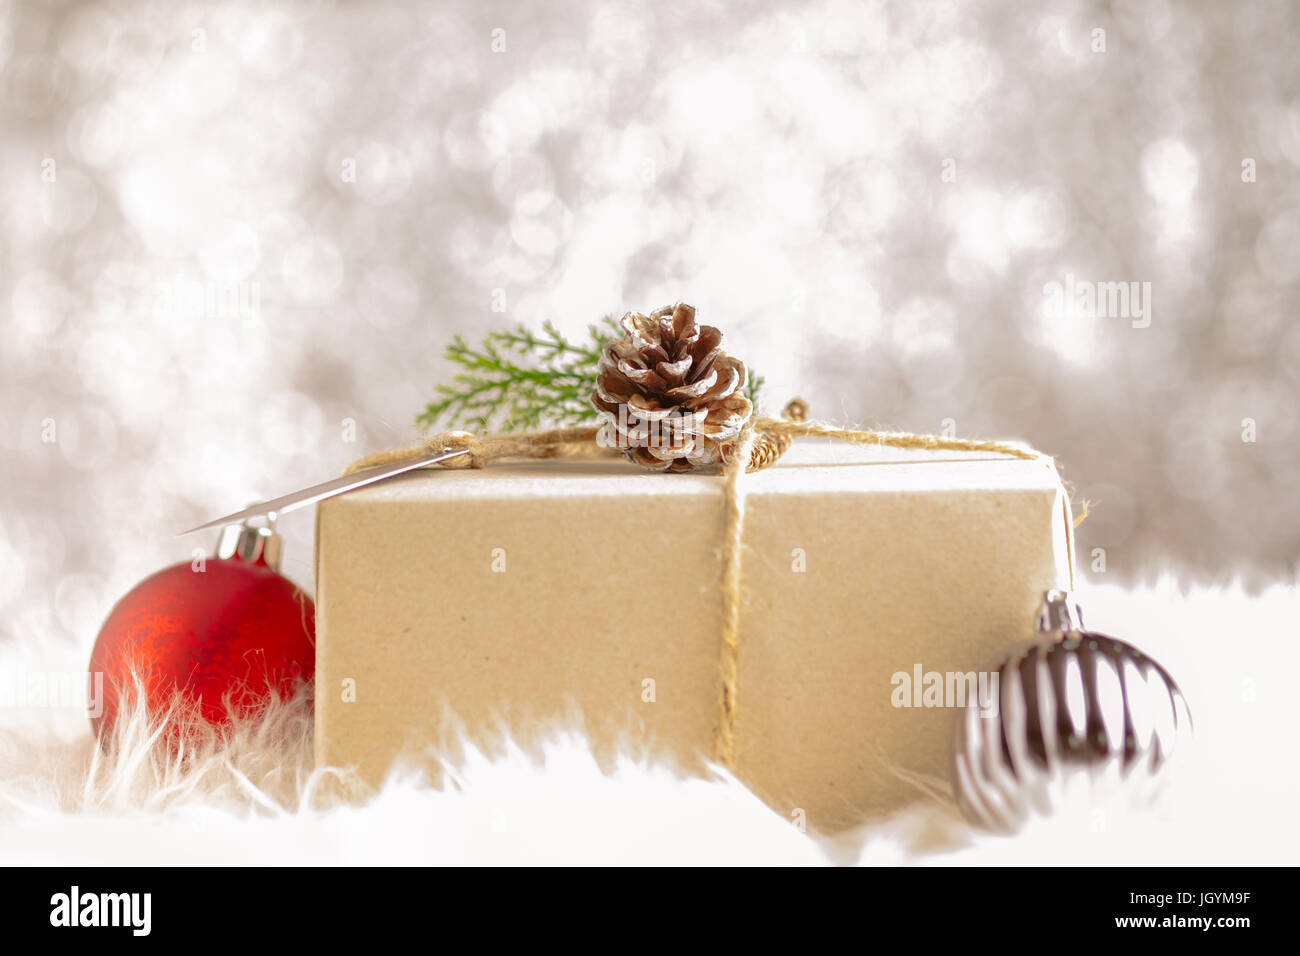 Braunen Papier Handwerk verzogen auf Geschenkbox dekorieren mit  Tannenzapfen und grünes Blatt Weihnachtskugel in funkelnden Bokeh  Backgrond, Geschenke für Urlaub se Stockfotografie - Alamy